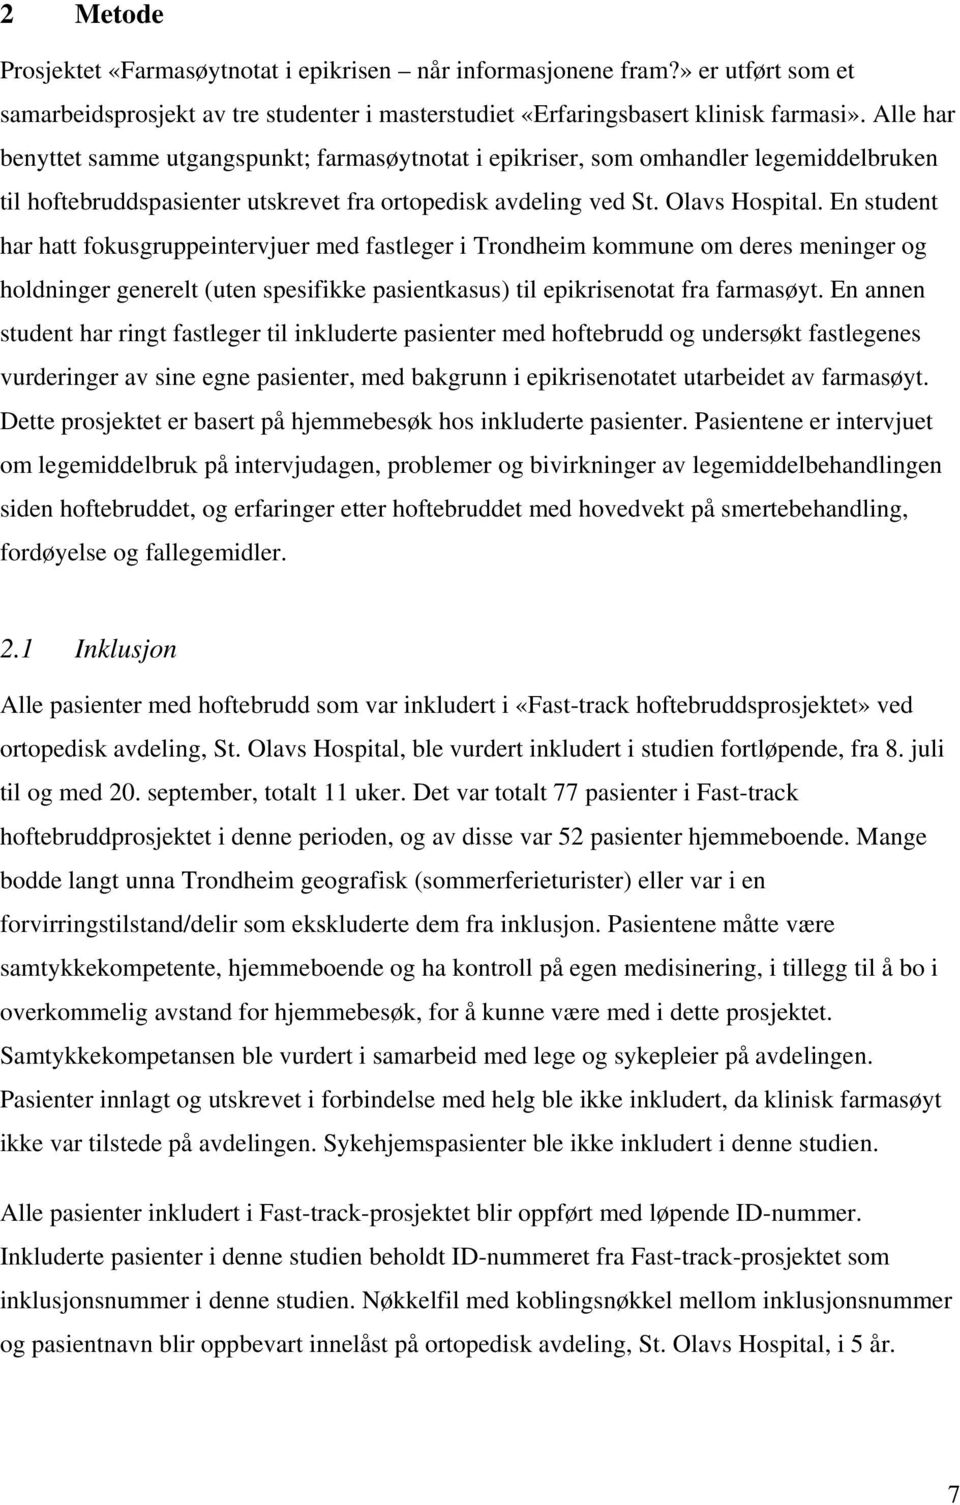 En student har hatt fokusgruppeintervjuer med fastleger i Trondheim kommune om deres meninger og holdninger generelt (uten spesifikke pasientkasus) til epikrisenotat fra farmasøyt.